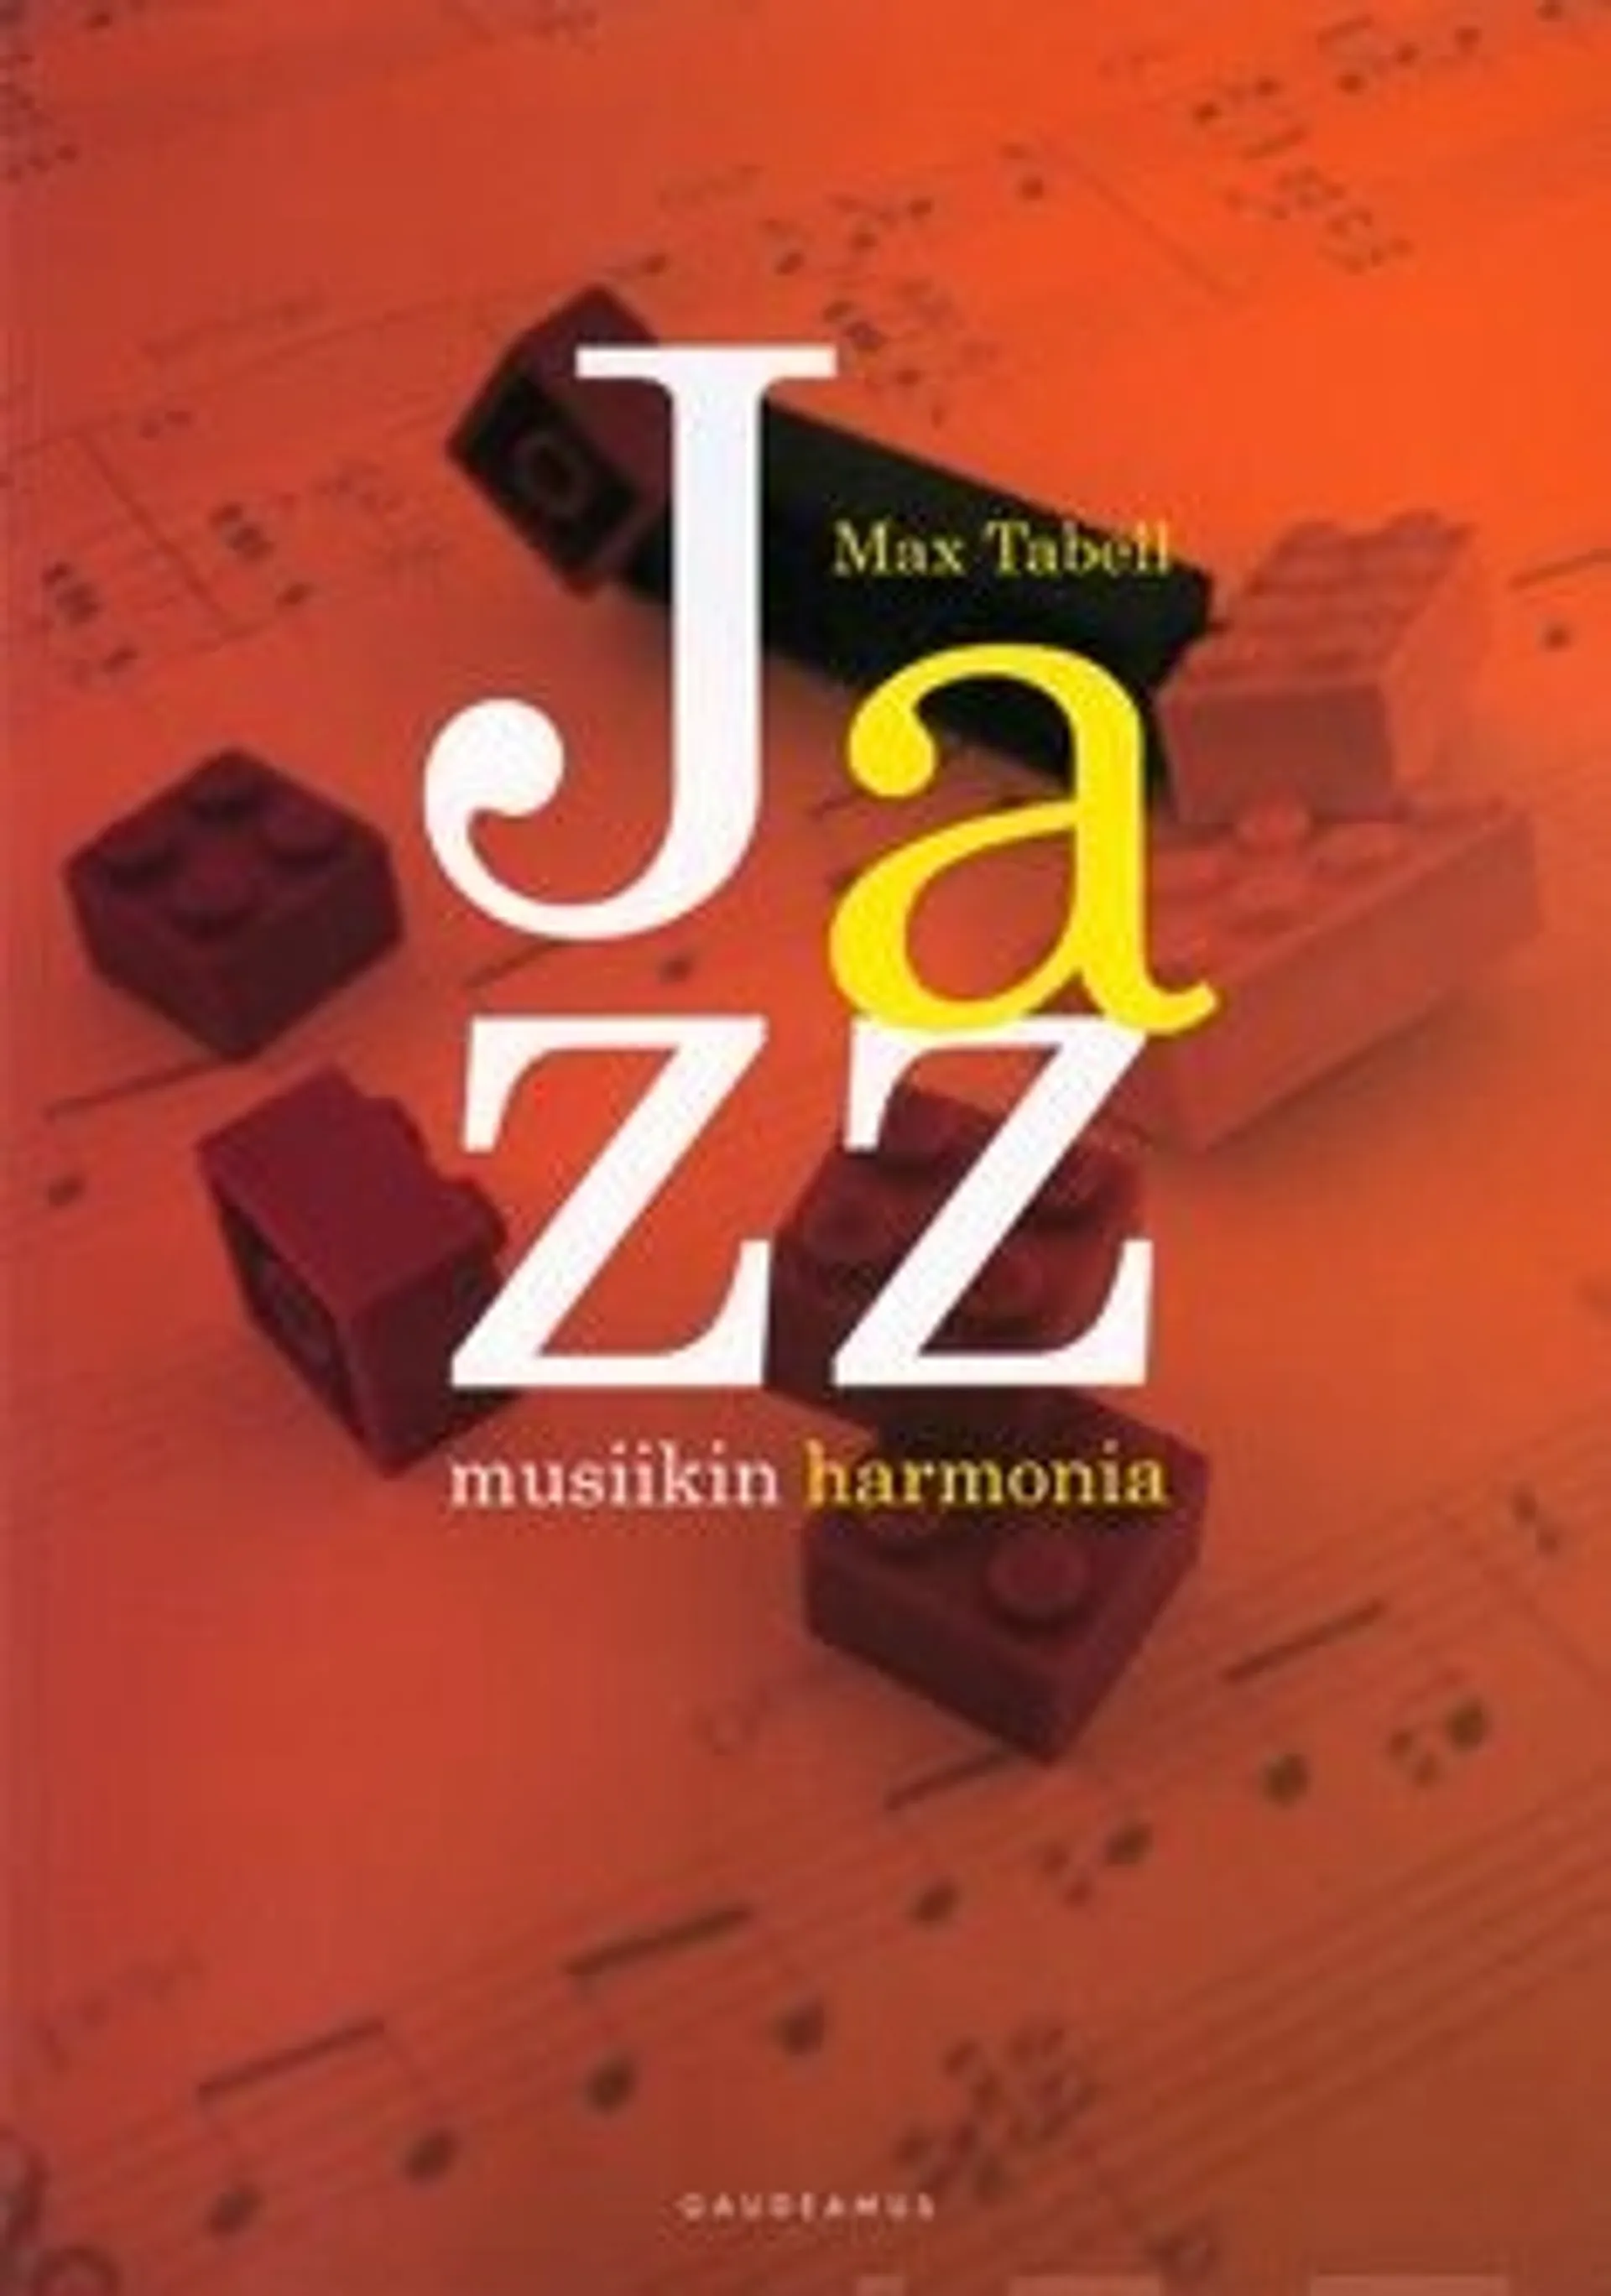 Tabell, Jazzmusiikin harmonia